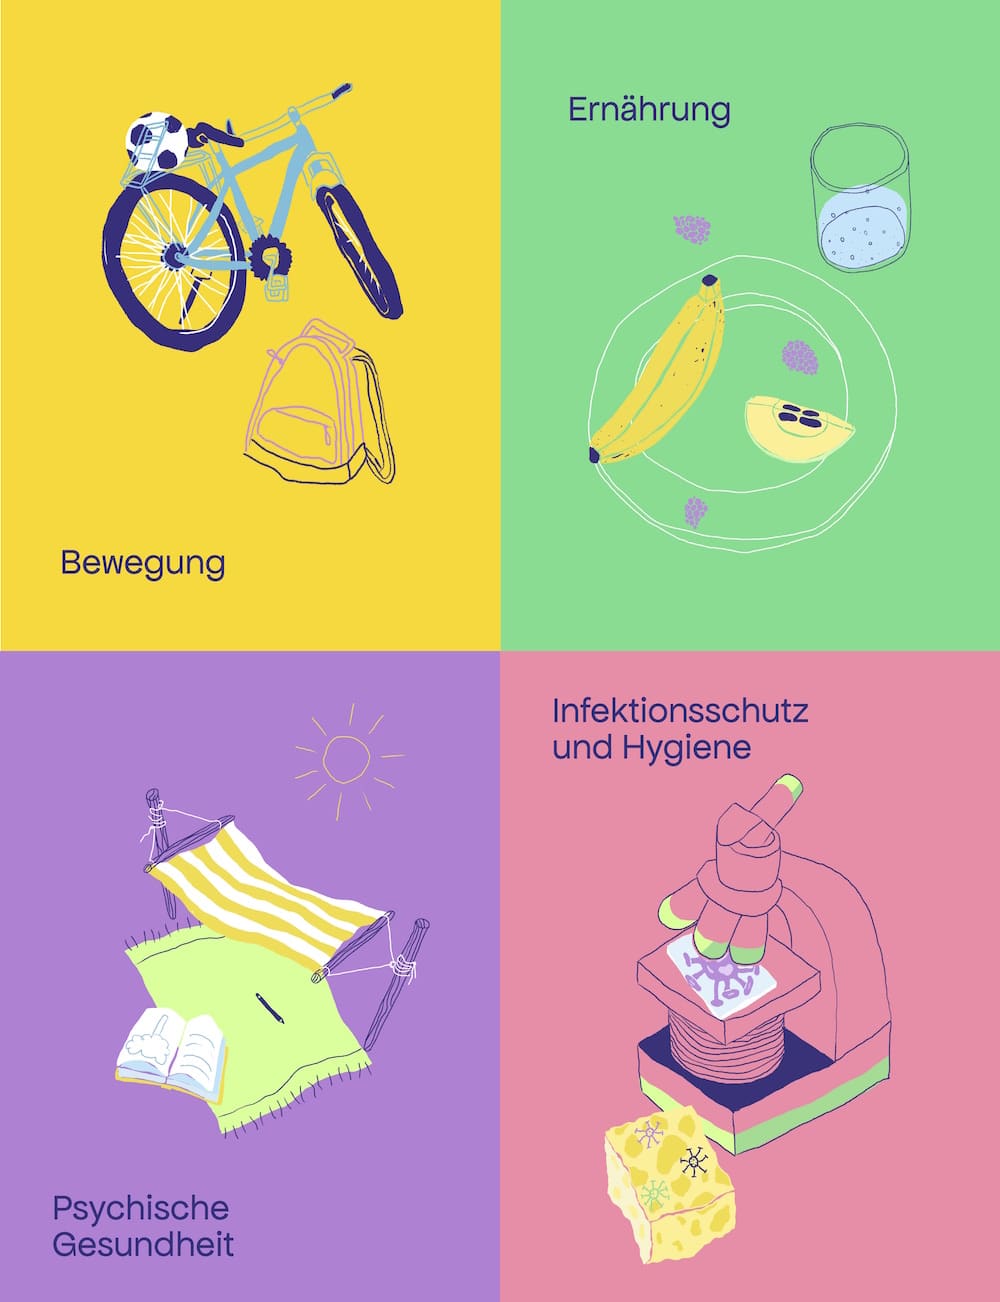 Digitales Brand Design für das Projekt »Gesundheitsforscher:innen«: Spielerische und farbenfrohe Illustrationen zu den Themenschwerpunkten Bewegung, Ernährung, Psychische Gesundheit und Infektionsschutz und Hygiene